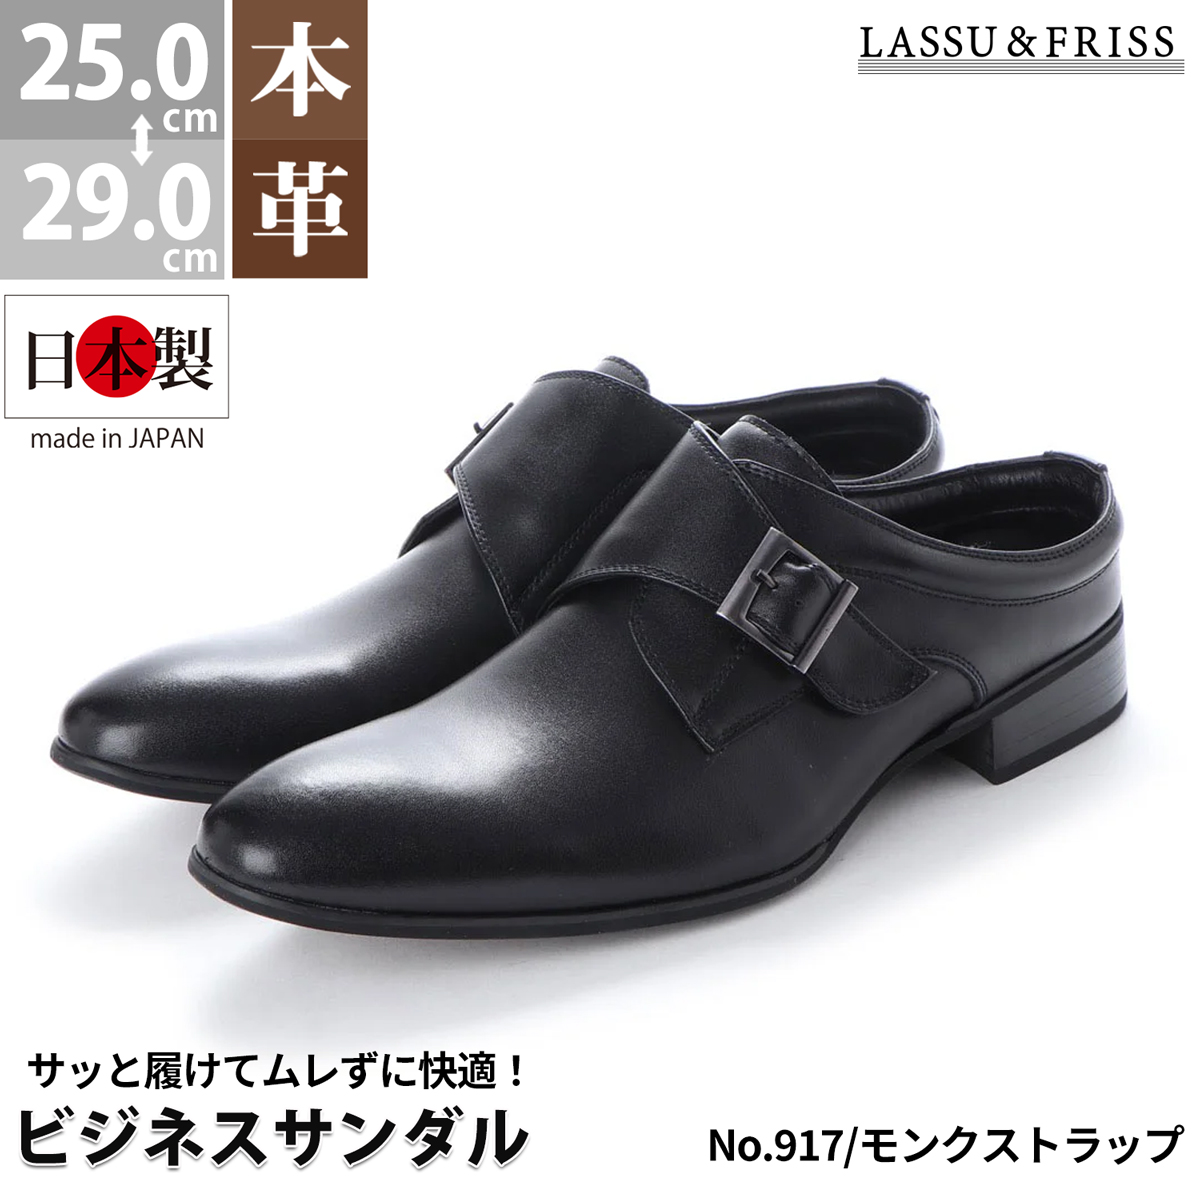 ビジネスシューズ 本革 日本製 通気性 サンダル 革靴 モンクストラップ レザー 紳士 会社 かかとなし 25-29cm No.917 ラスアンドフリス